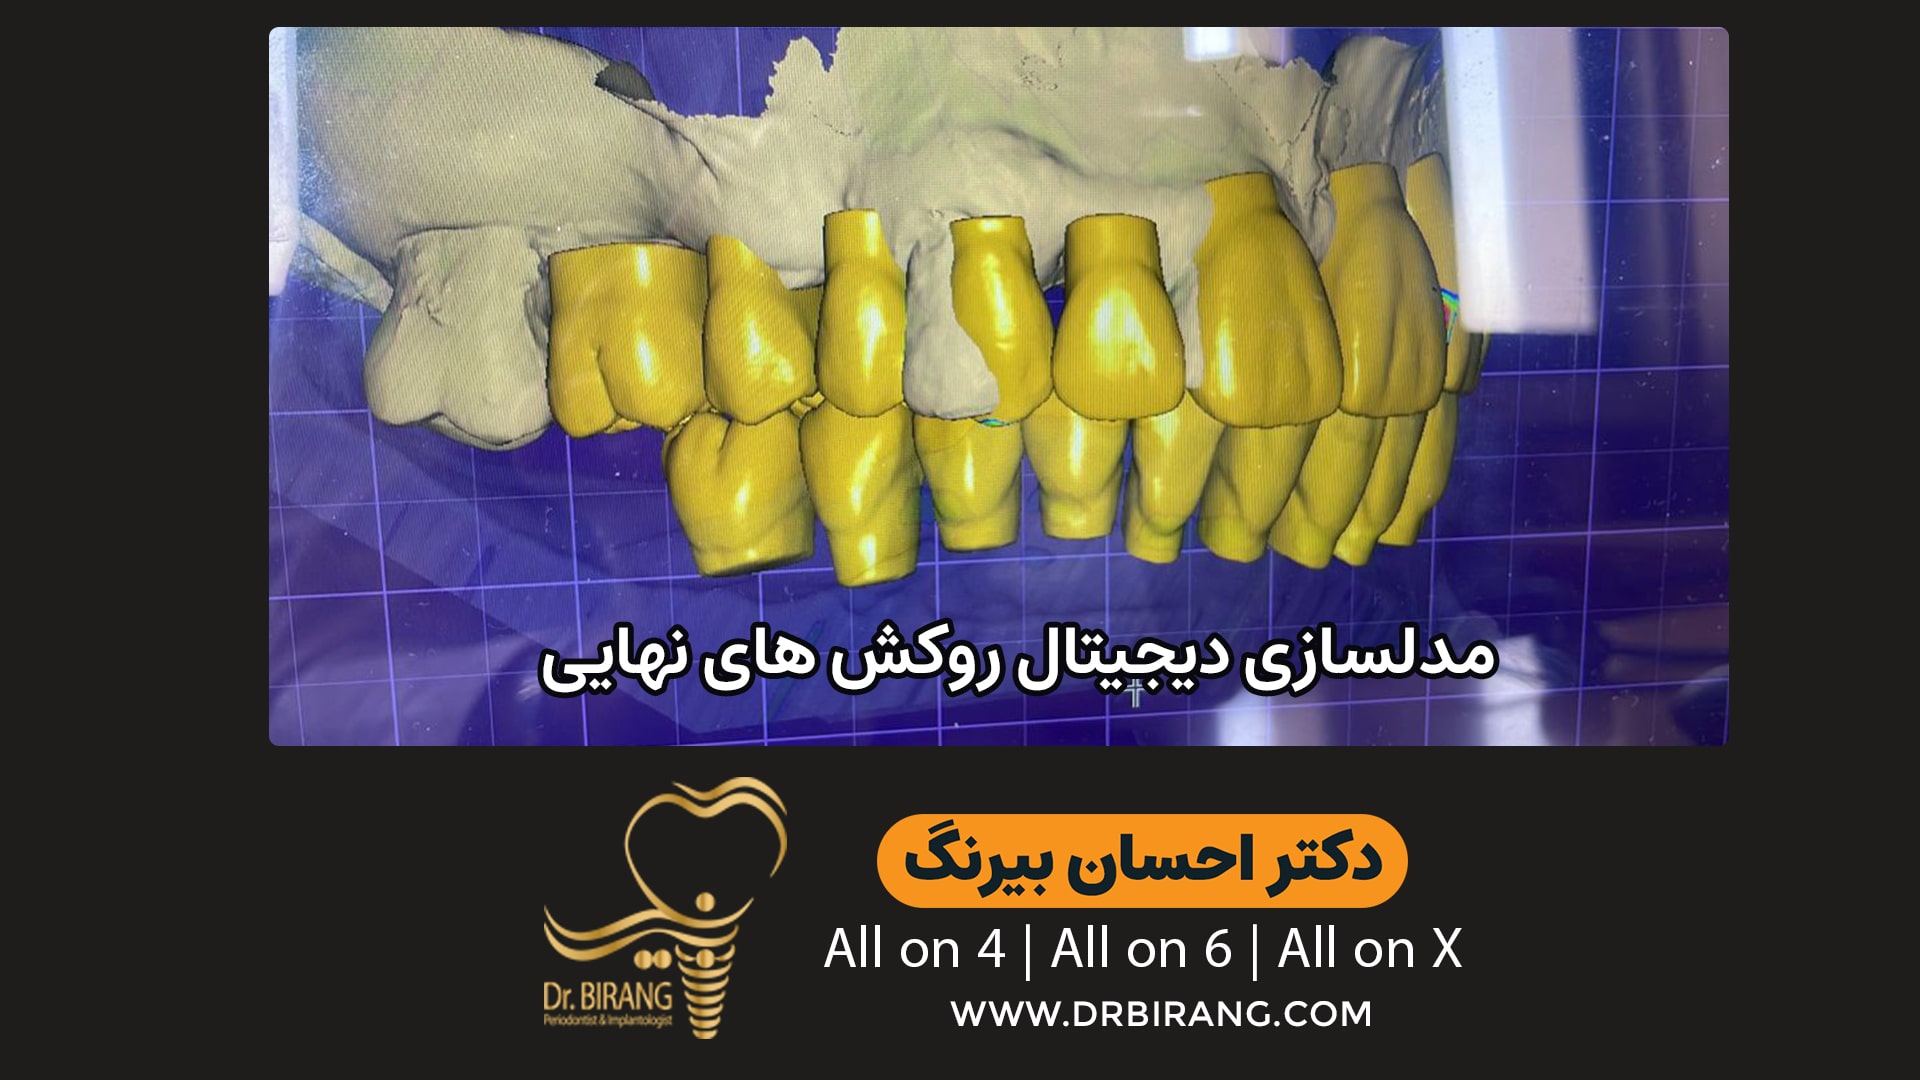 مدلسازی کاشت دندان با تکنیک دیجیتال برای بیماران خارج از کشور | دکتر احسان بیرنگ متخصص ایمپلنت در تهران